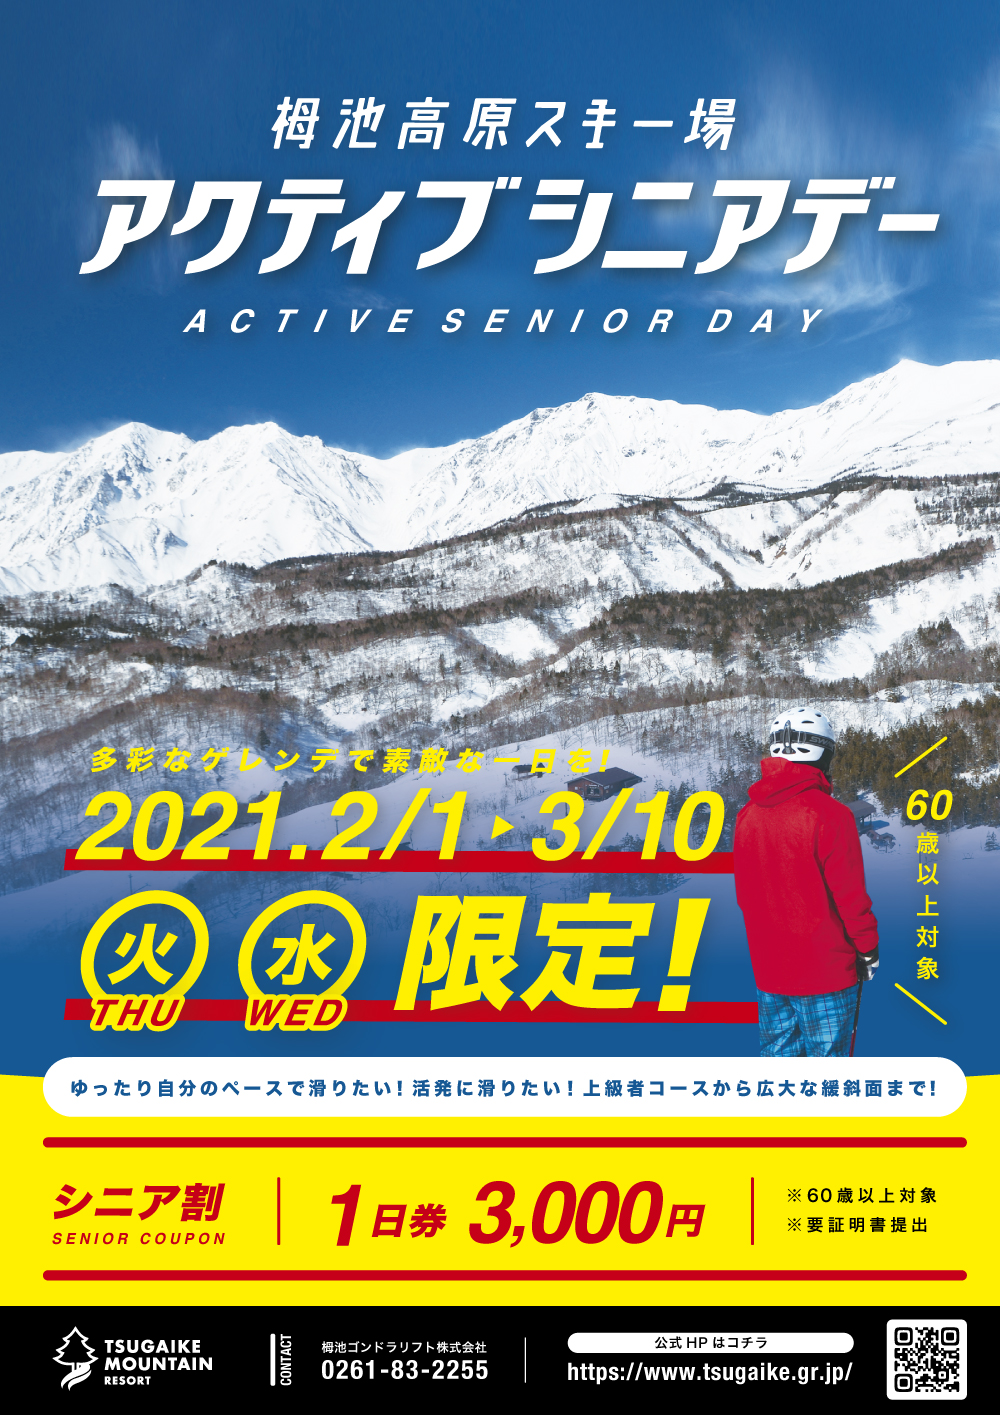 栂池高原スキー場 ICチケット1日券 大人2枚 リフト券 ランチ券 ¥1000